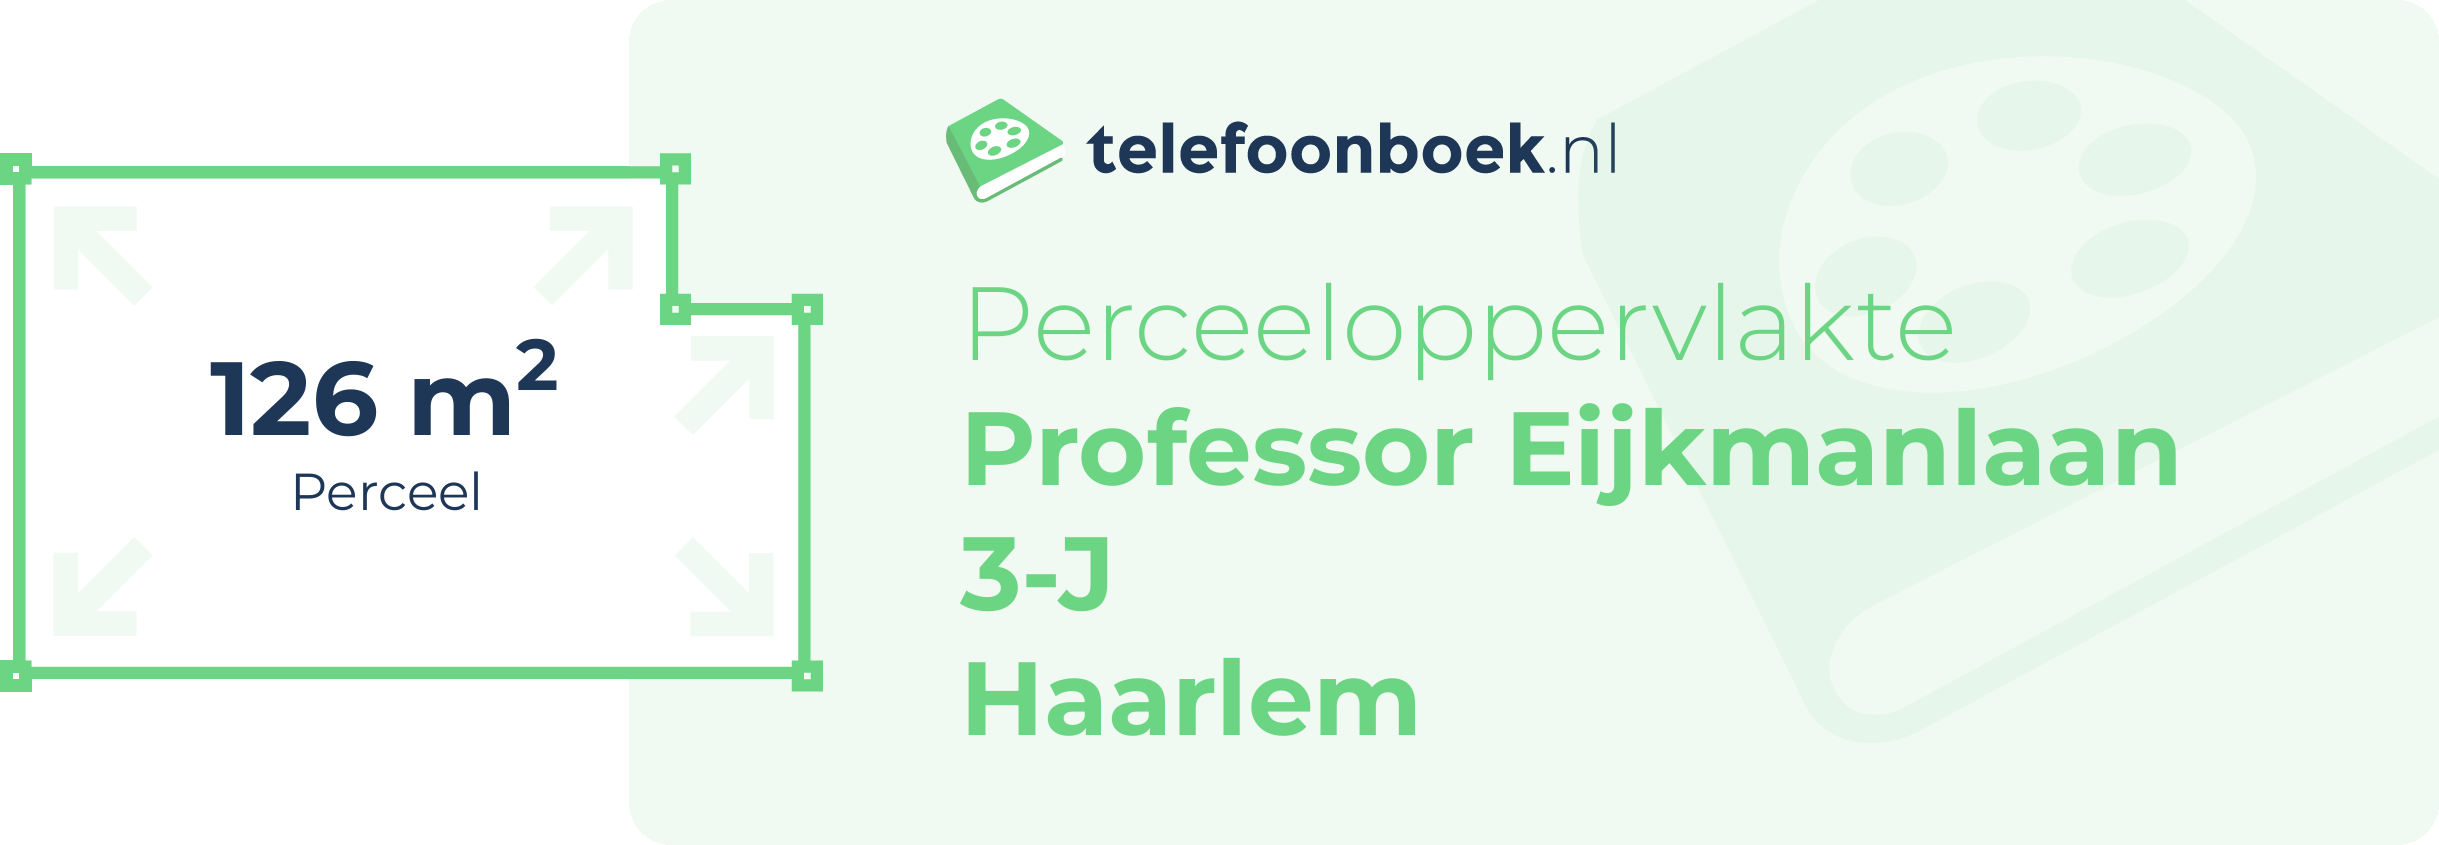 Perceeloppervlakte Professor Eijkmanlaan 3-J Haarlem